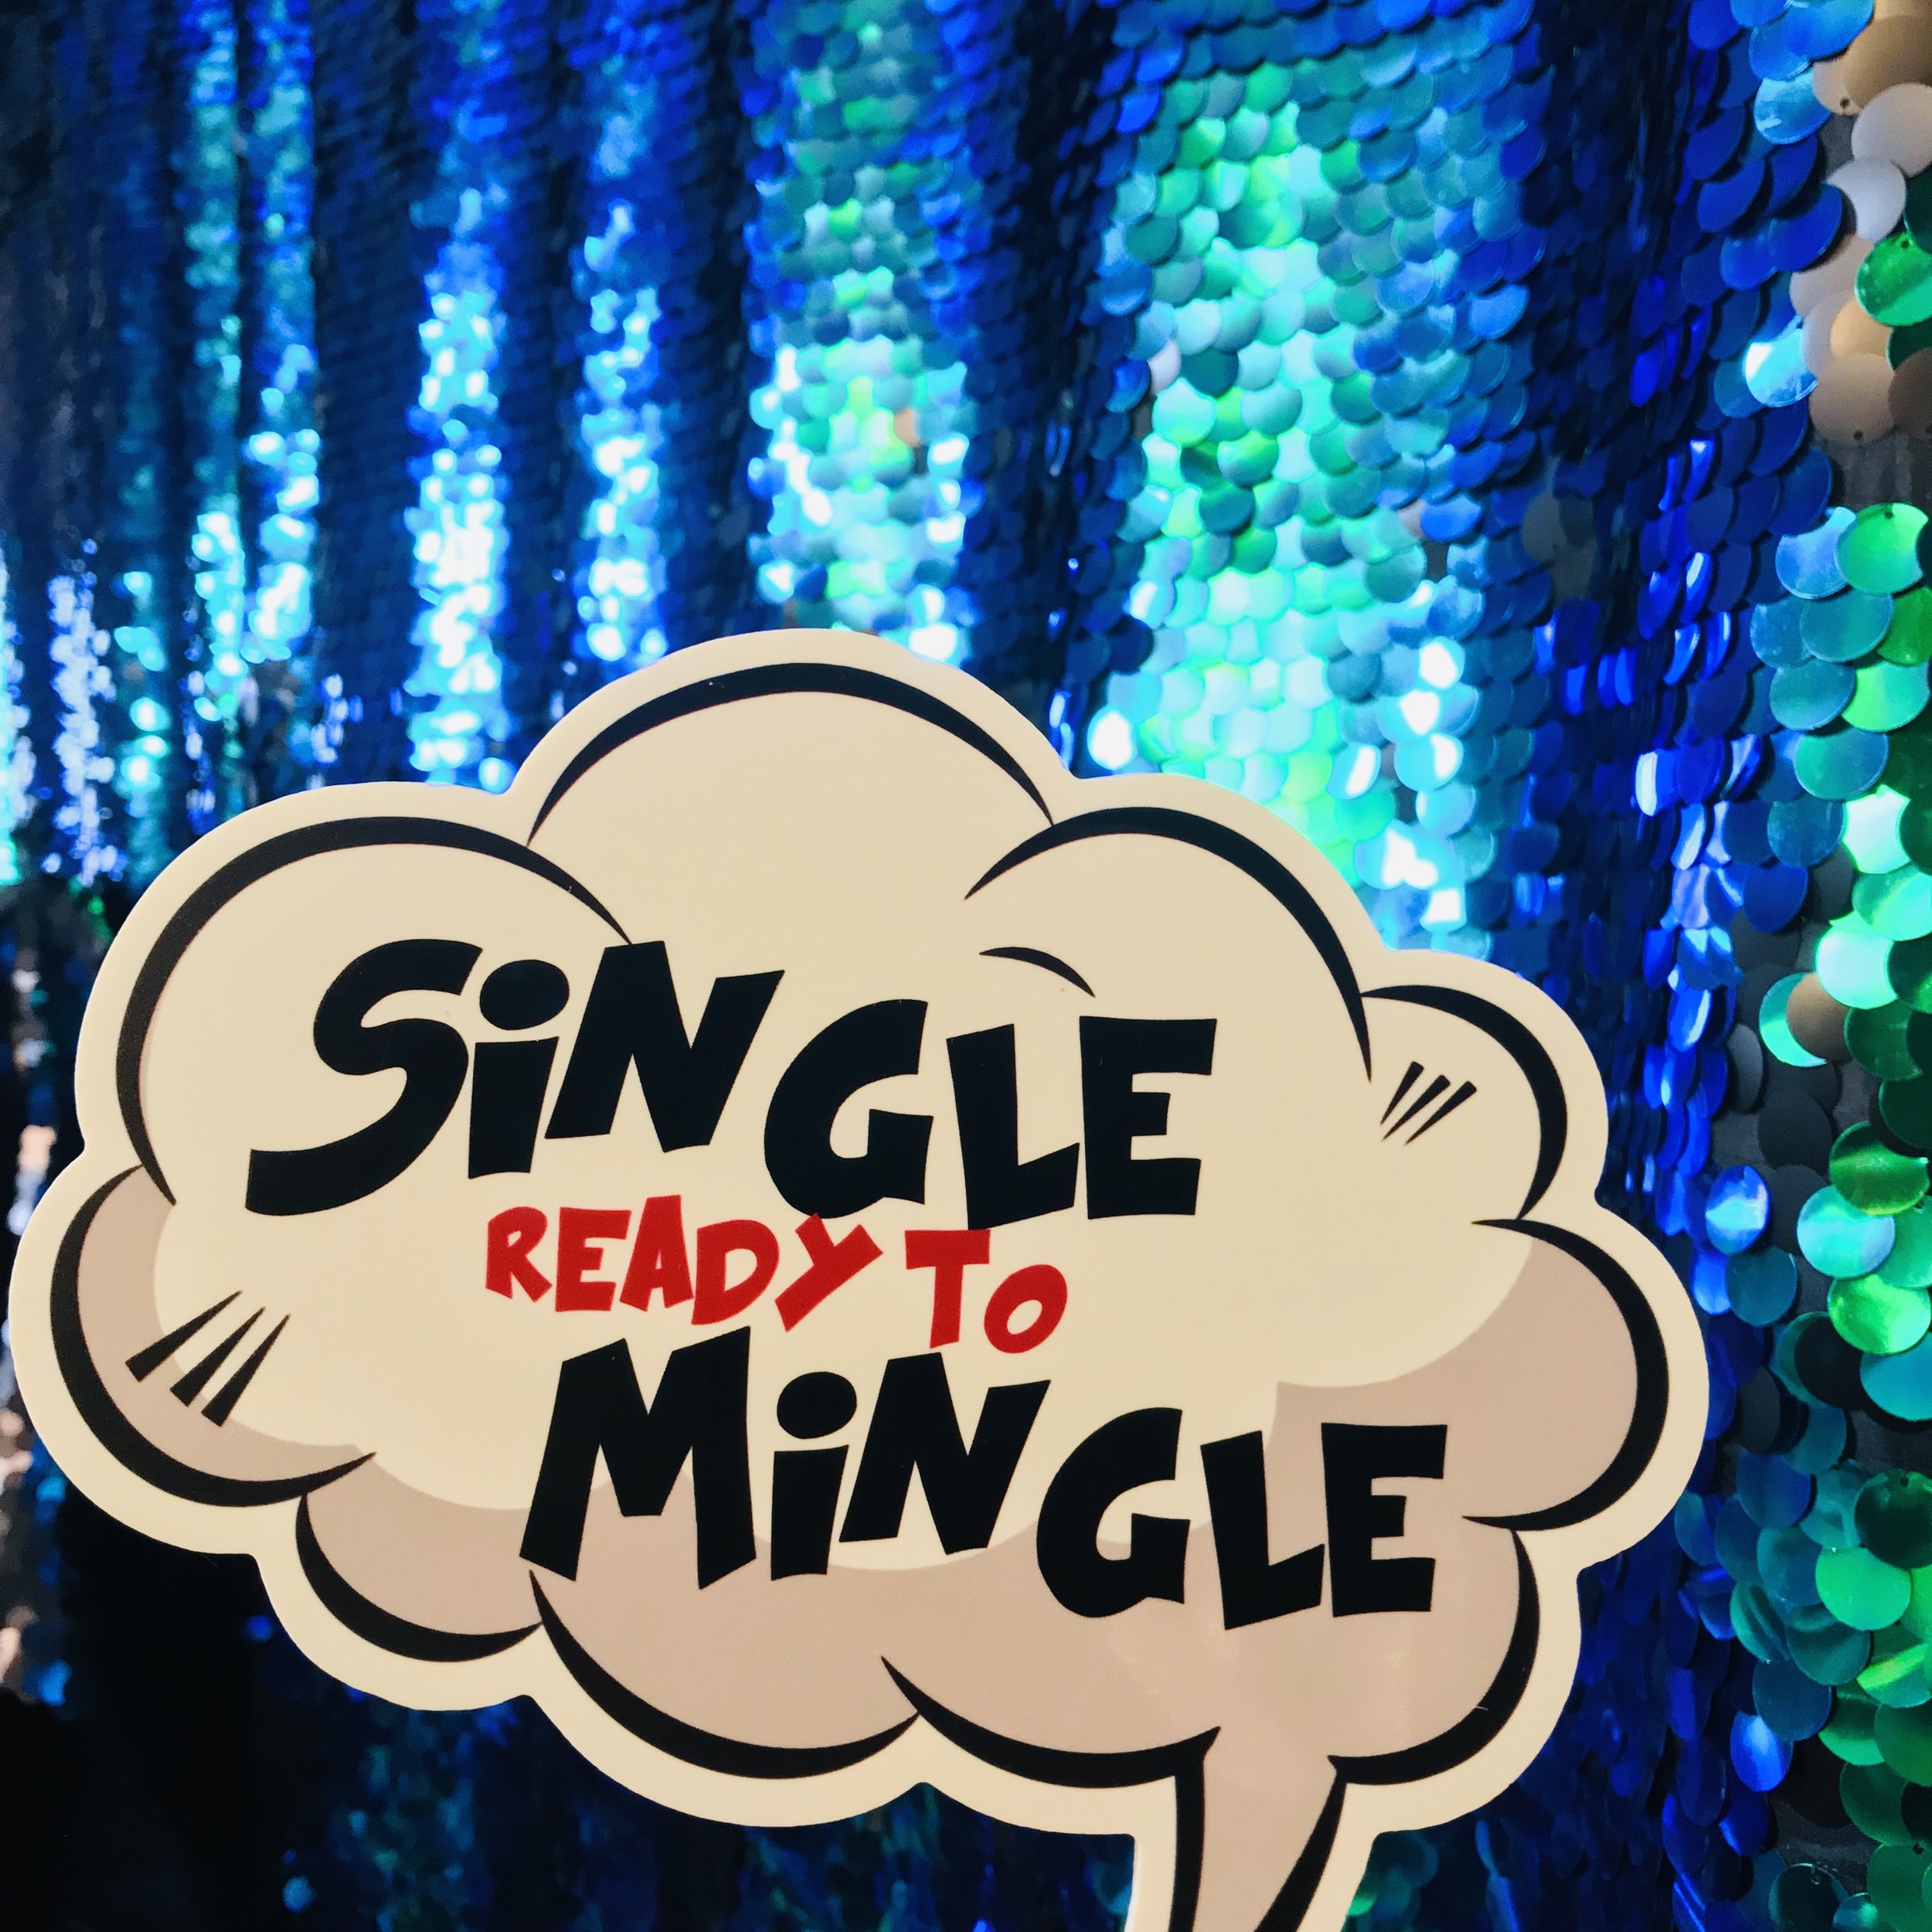 Single Ready to Mingle.jpg